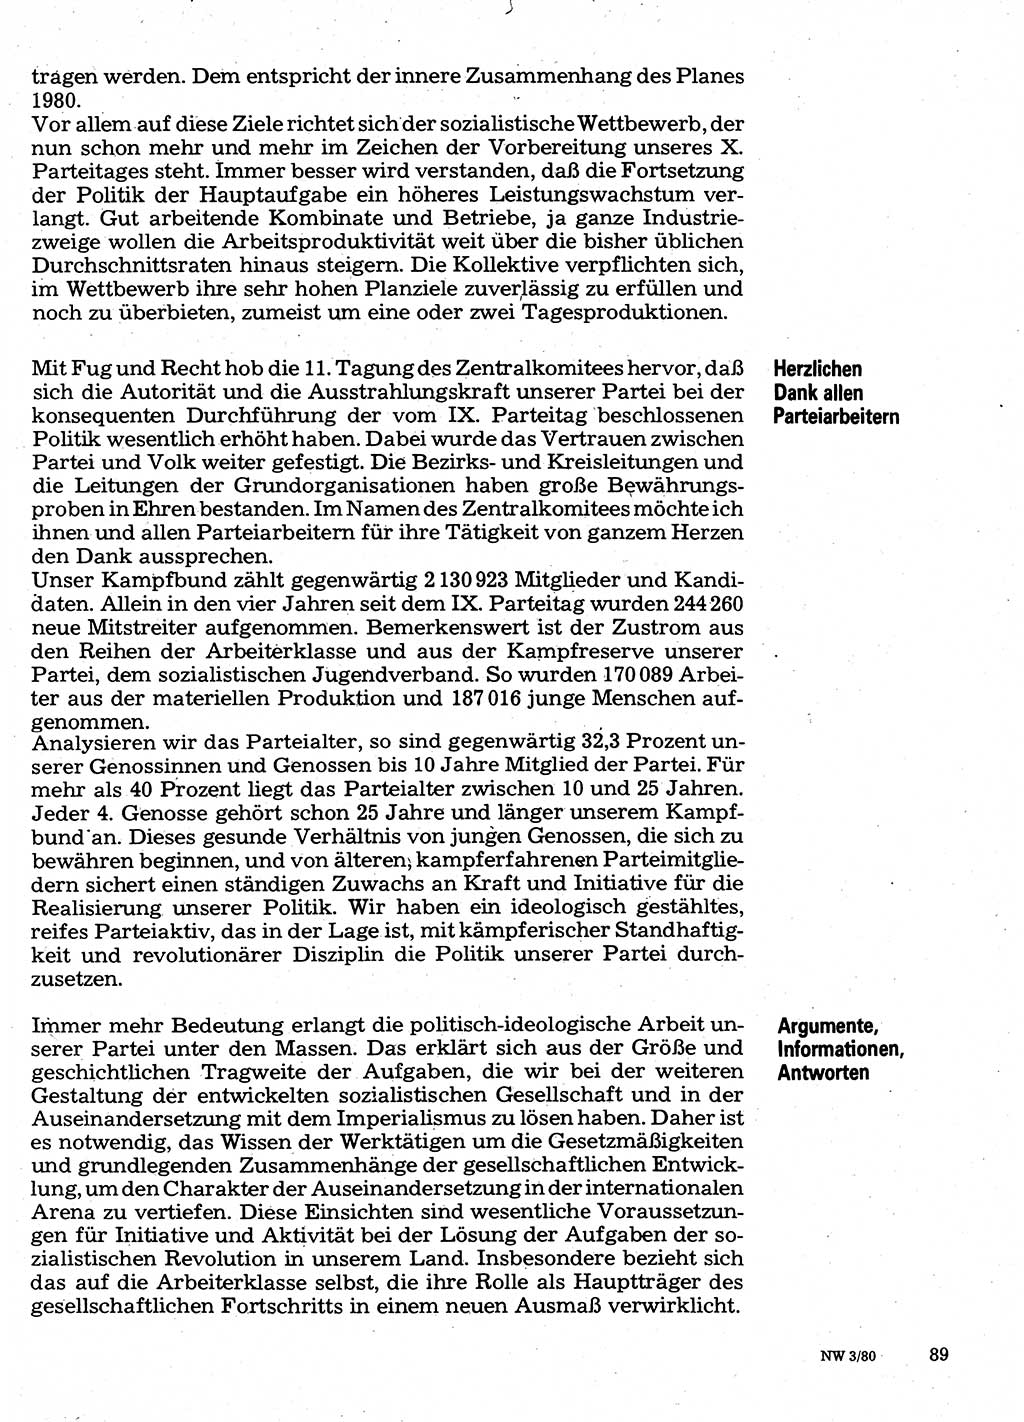 Neuer Weg (NW), Organ des Zentralkomitees (ZK) der SED (Sozialistische Einheitspartei Deutschlands) für Fragen des Parteilebens, 35. Jahrgang [Deutsche Demokratische Republik (DDR)] 1980, Seite 89 (NW ZK SED DDR 1980, S. 89)